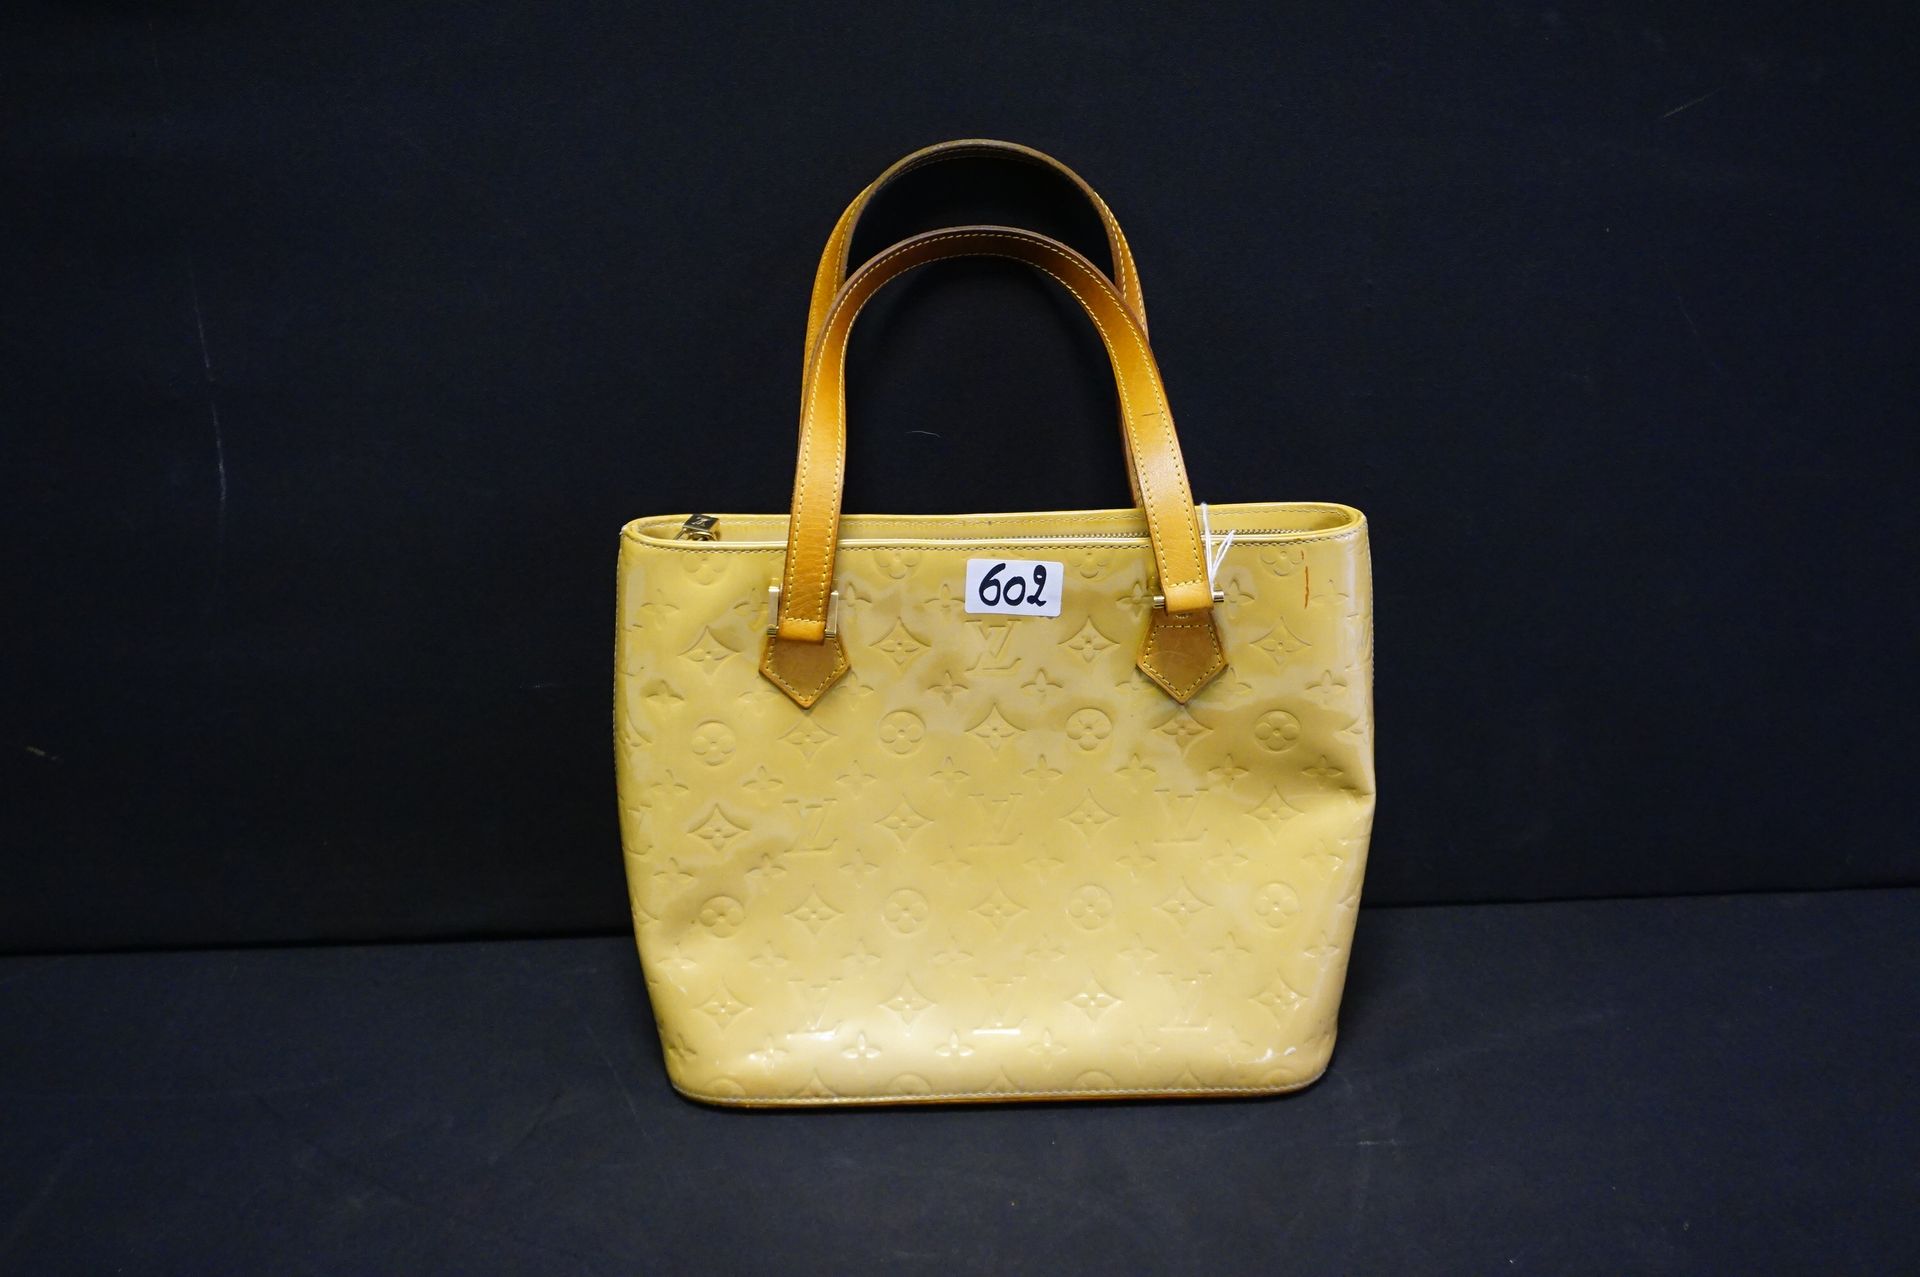 LOUIS VUITTON Original handbag in leather - Model "HOUSTON" - Color: Jaune mouta&hellip;